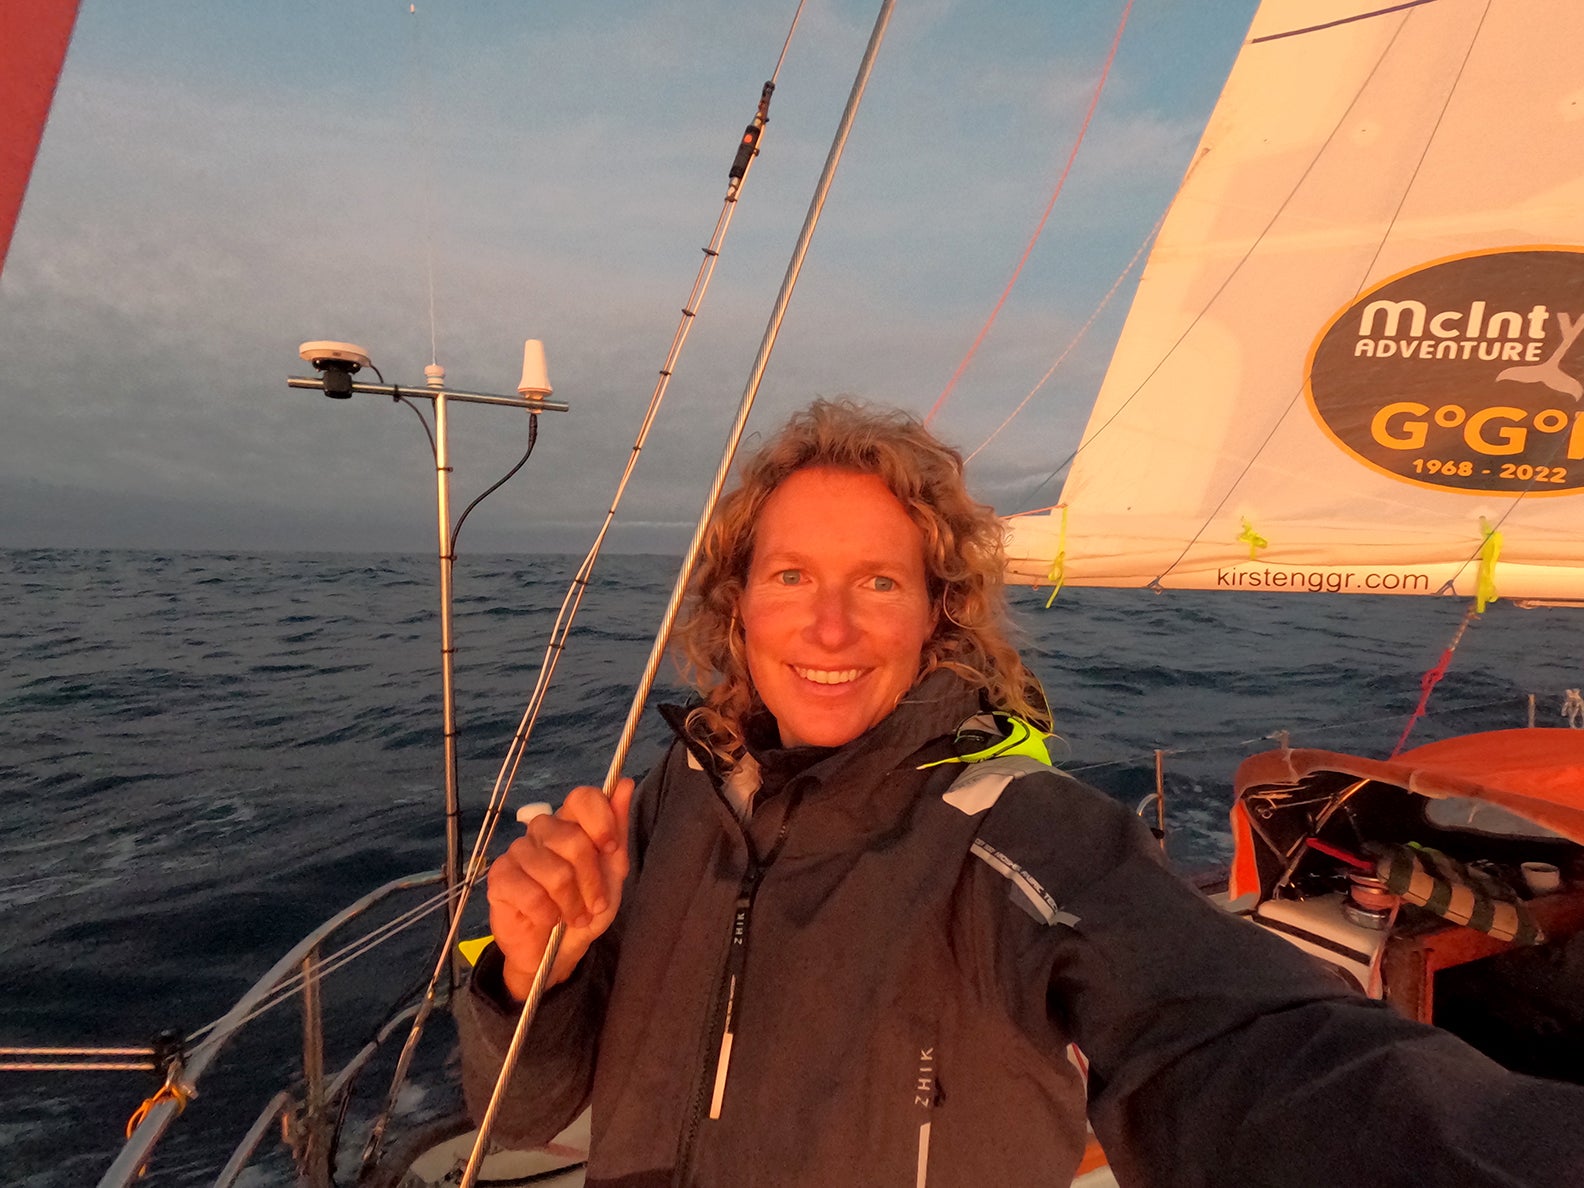 Sailing around the world was just the latest adventure for Kirsten Neuschafer